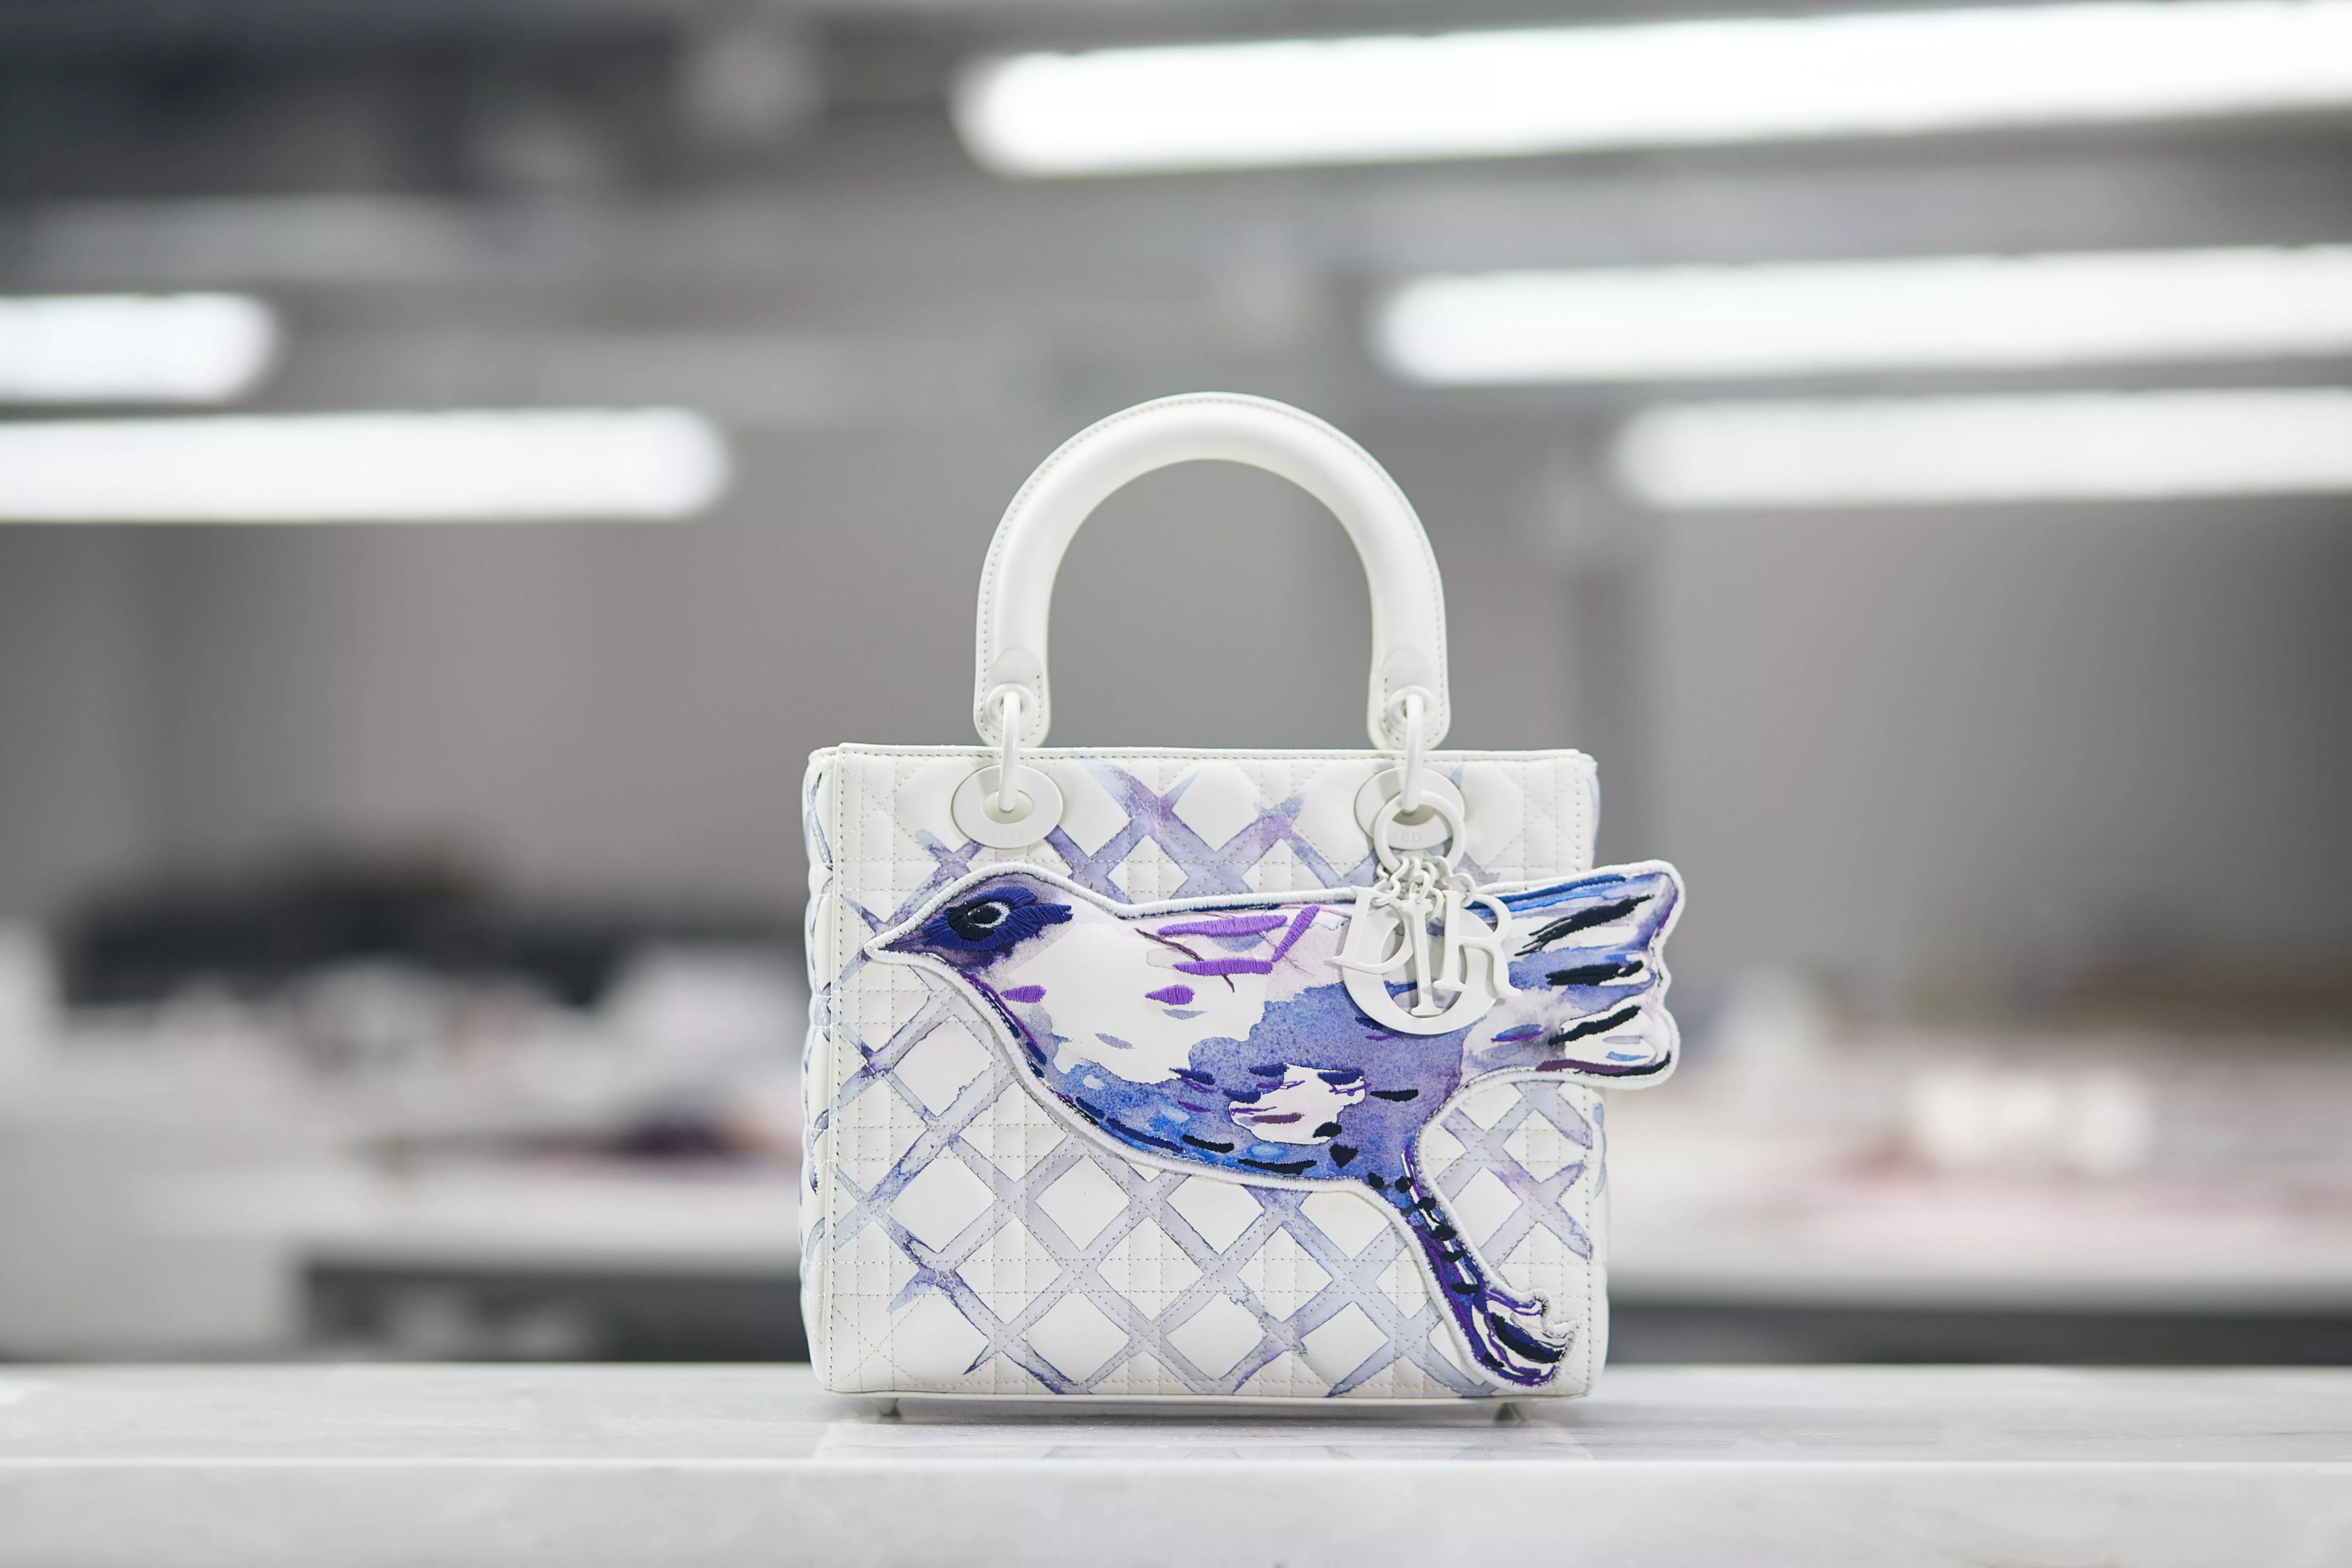 إطلاق مشروع Dior Lady Art لإعادة تصميم حقيبة Lady Dior الأيقونية